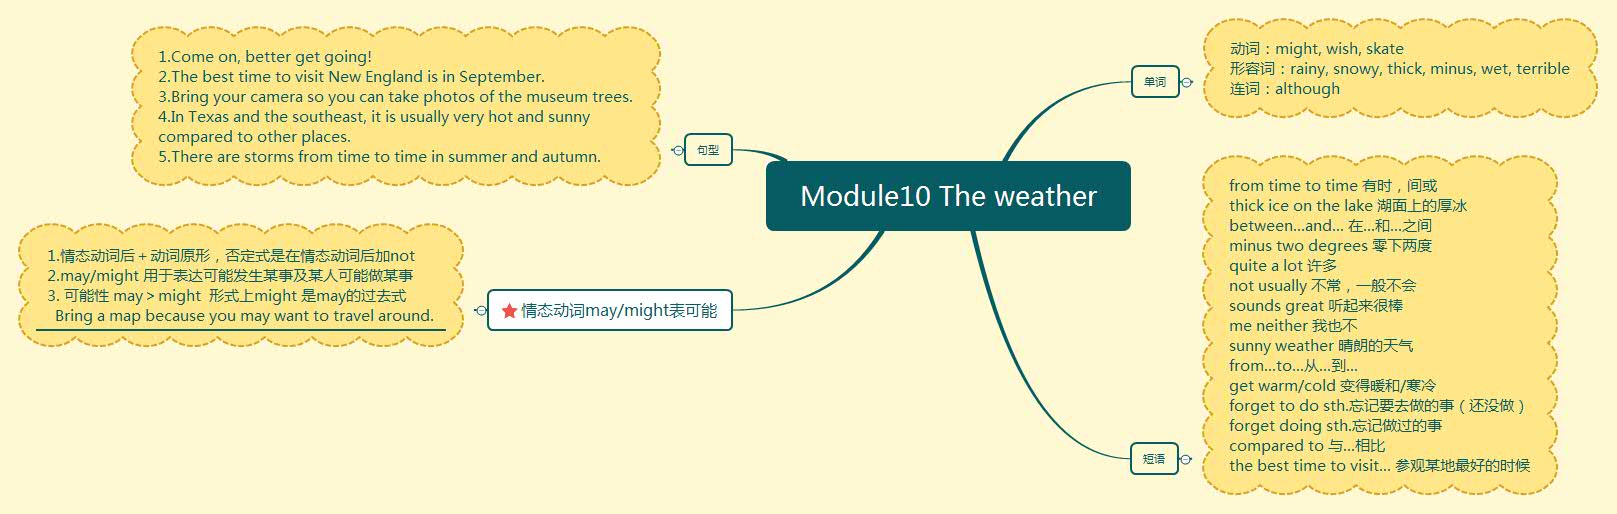 Module10 The weather.jpg